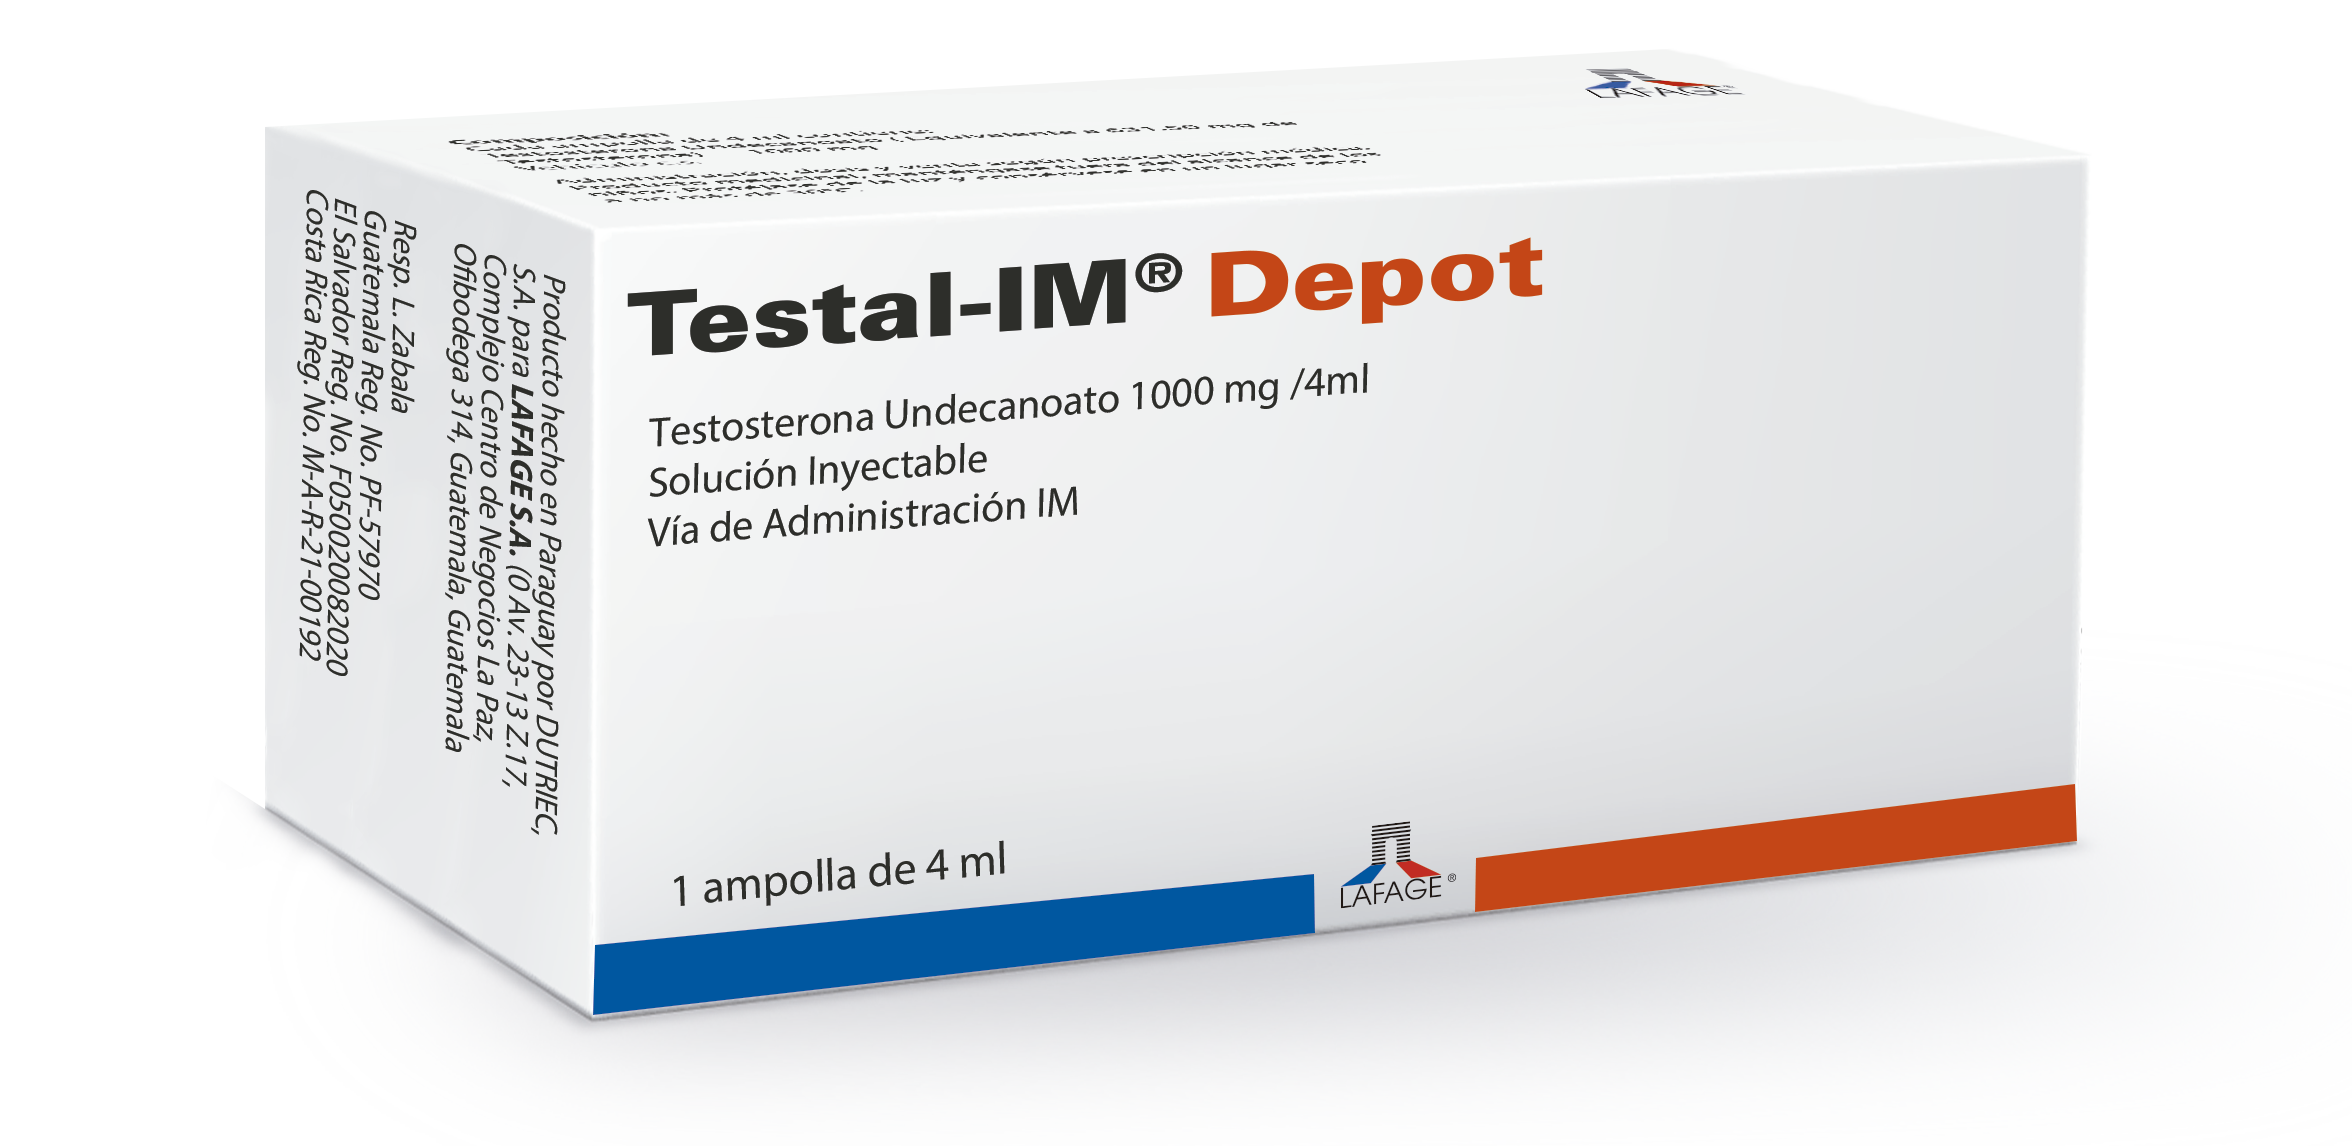 Testal-IM® Depot